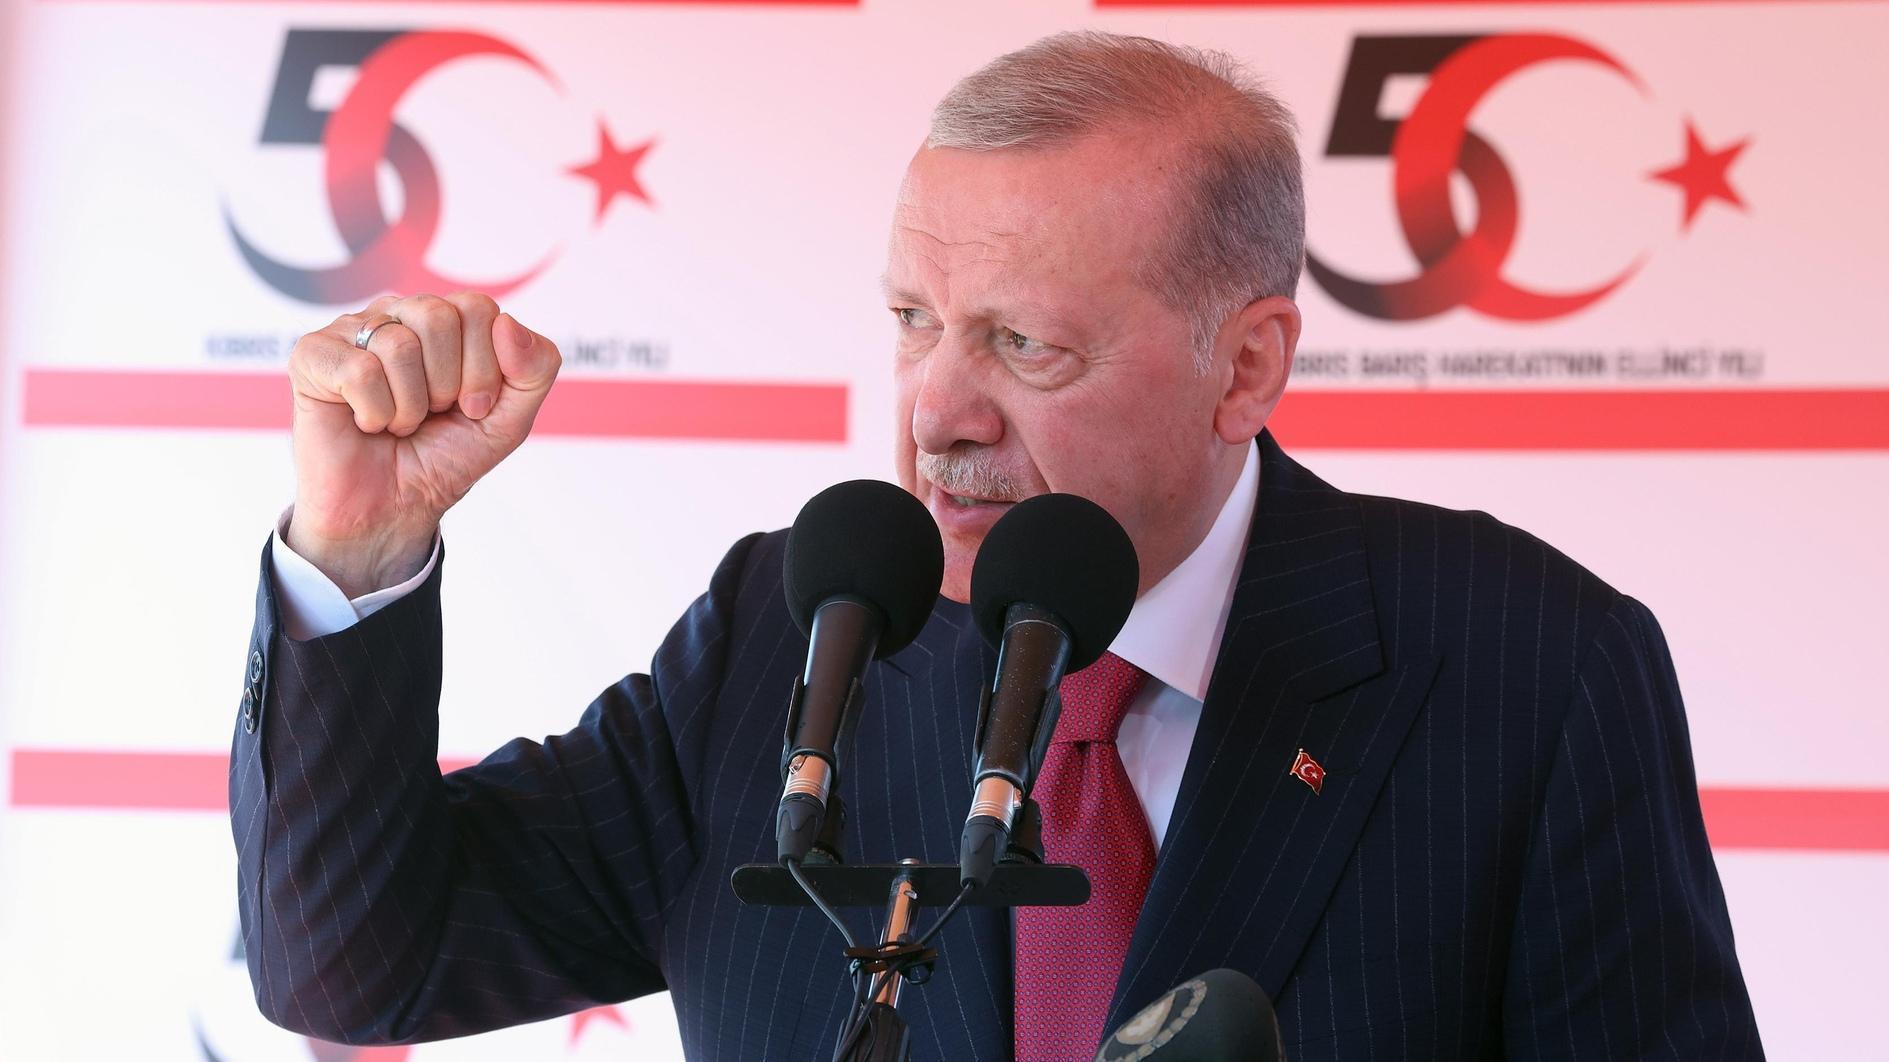 Erdoğan bevestigt tweestatenoplossing voor Cyprus